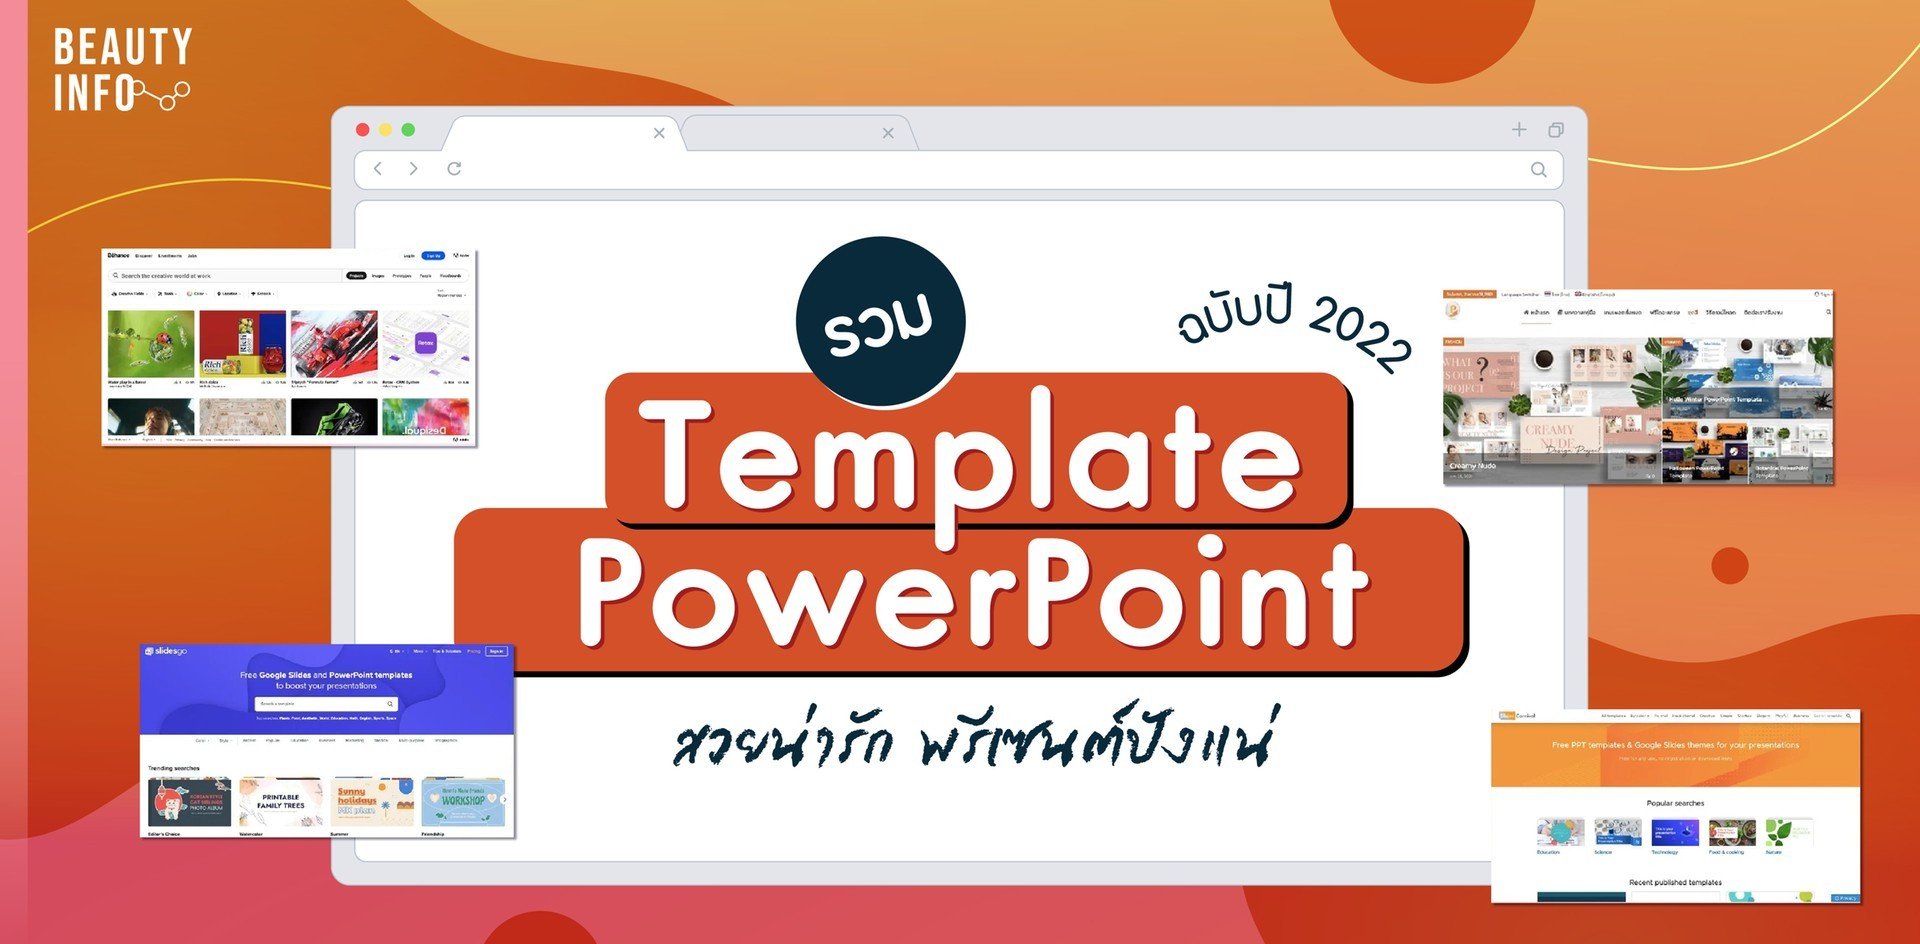 รวมเว็บไซต์แจก Template Powerpoint ฟรี พรีเซนต์สวยแบบมือโปร!